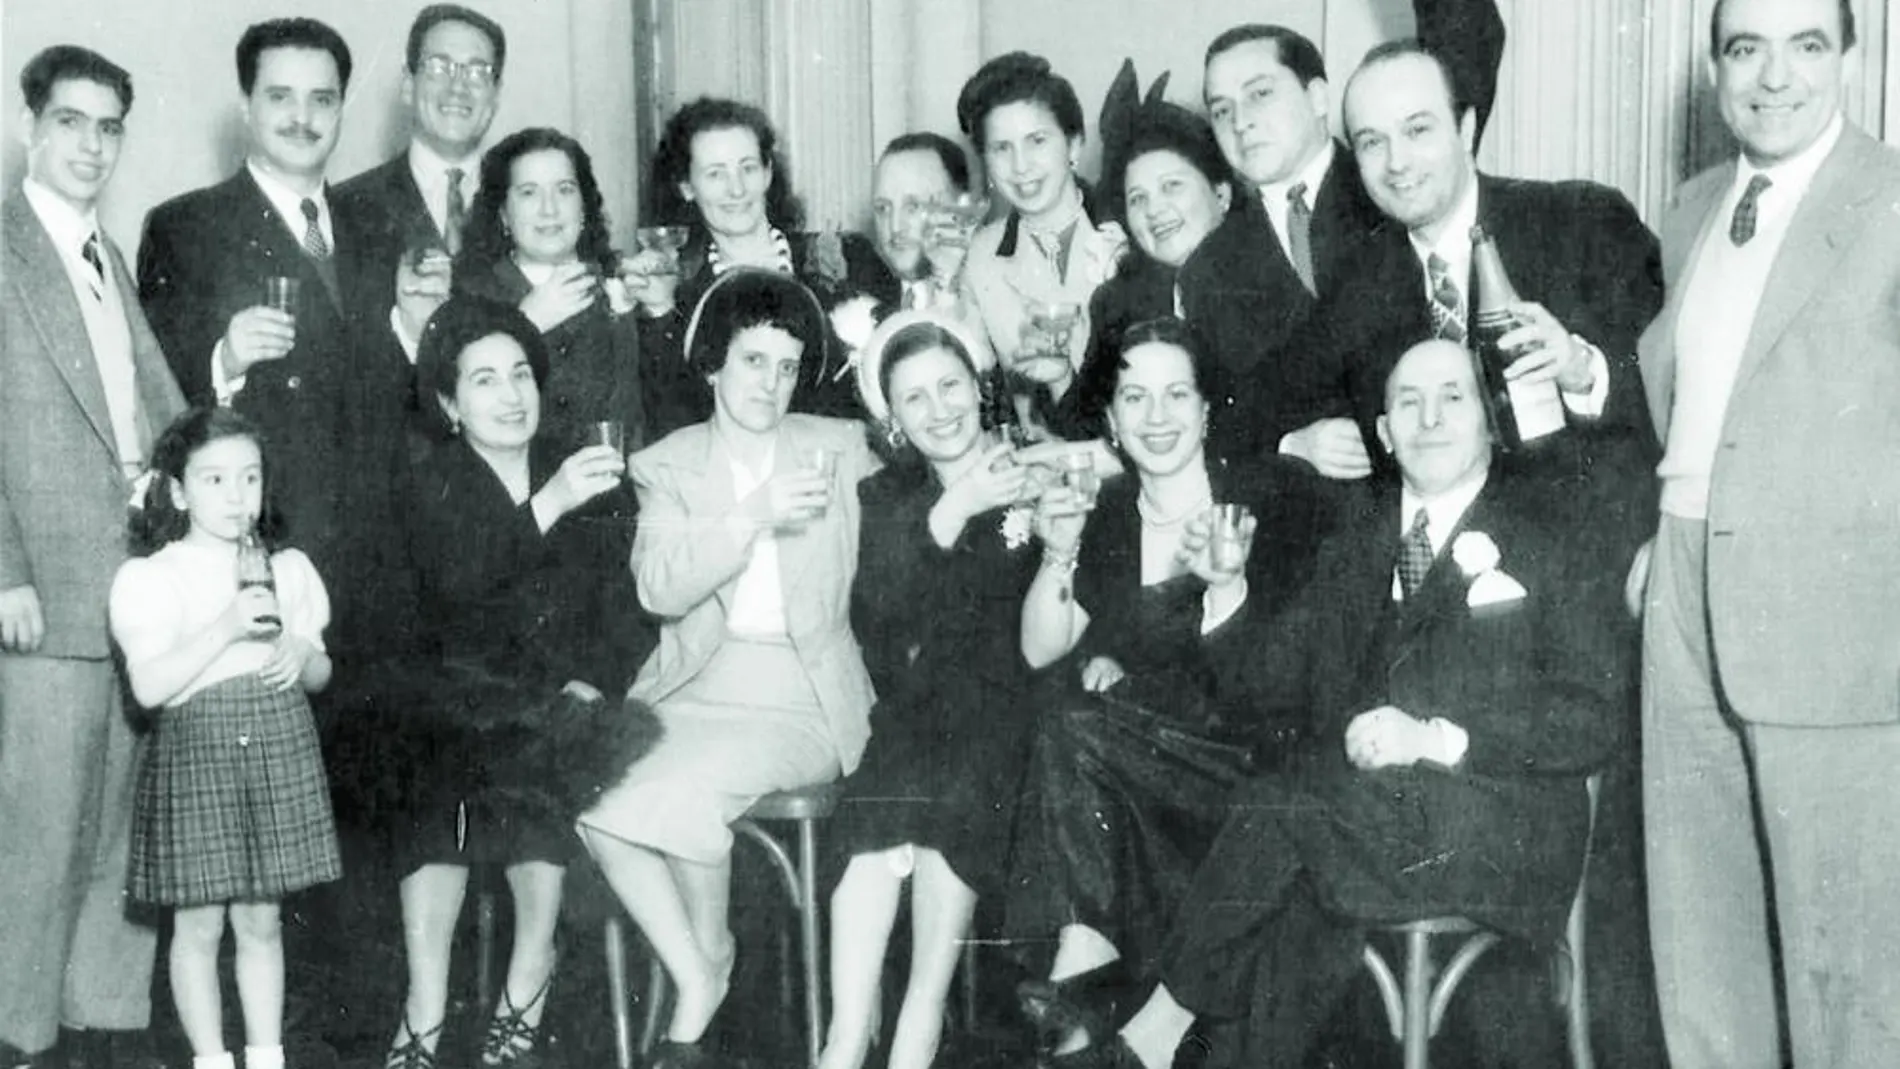 Uno de los documentos más importantes localizados por el abogado Beltrán Gambier fue esta fotografía conservada en el álbum familiar de la familia Perea. En ella se recoge la celebración por la boda de Aurora Perea y Pedro Carnicero, sucedida en Buenos Aires en 1952. Josep Pla no estuvo presente.